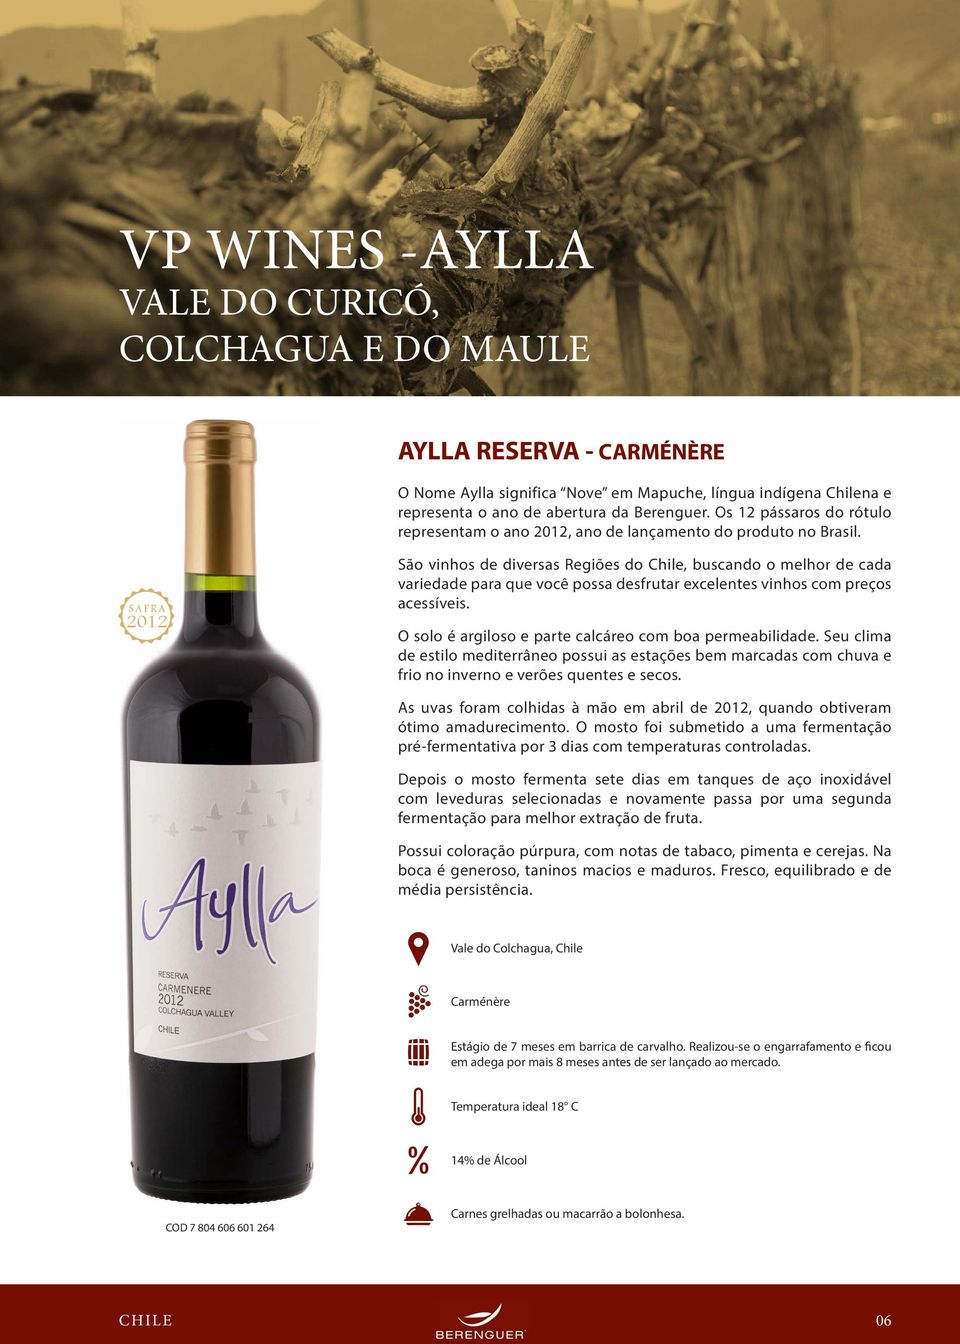 2012 São vinhos de diversas Regiões do Chile, buscando o melhor de cada variedade para que você possa desfrutar excelentes vinhos com preços acessíveis.